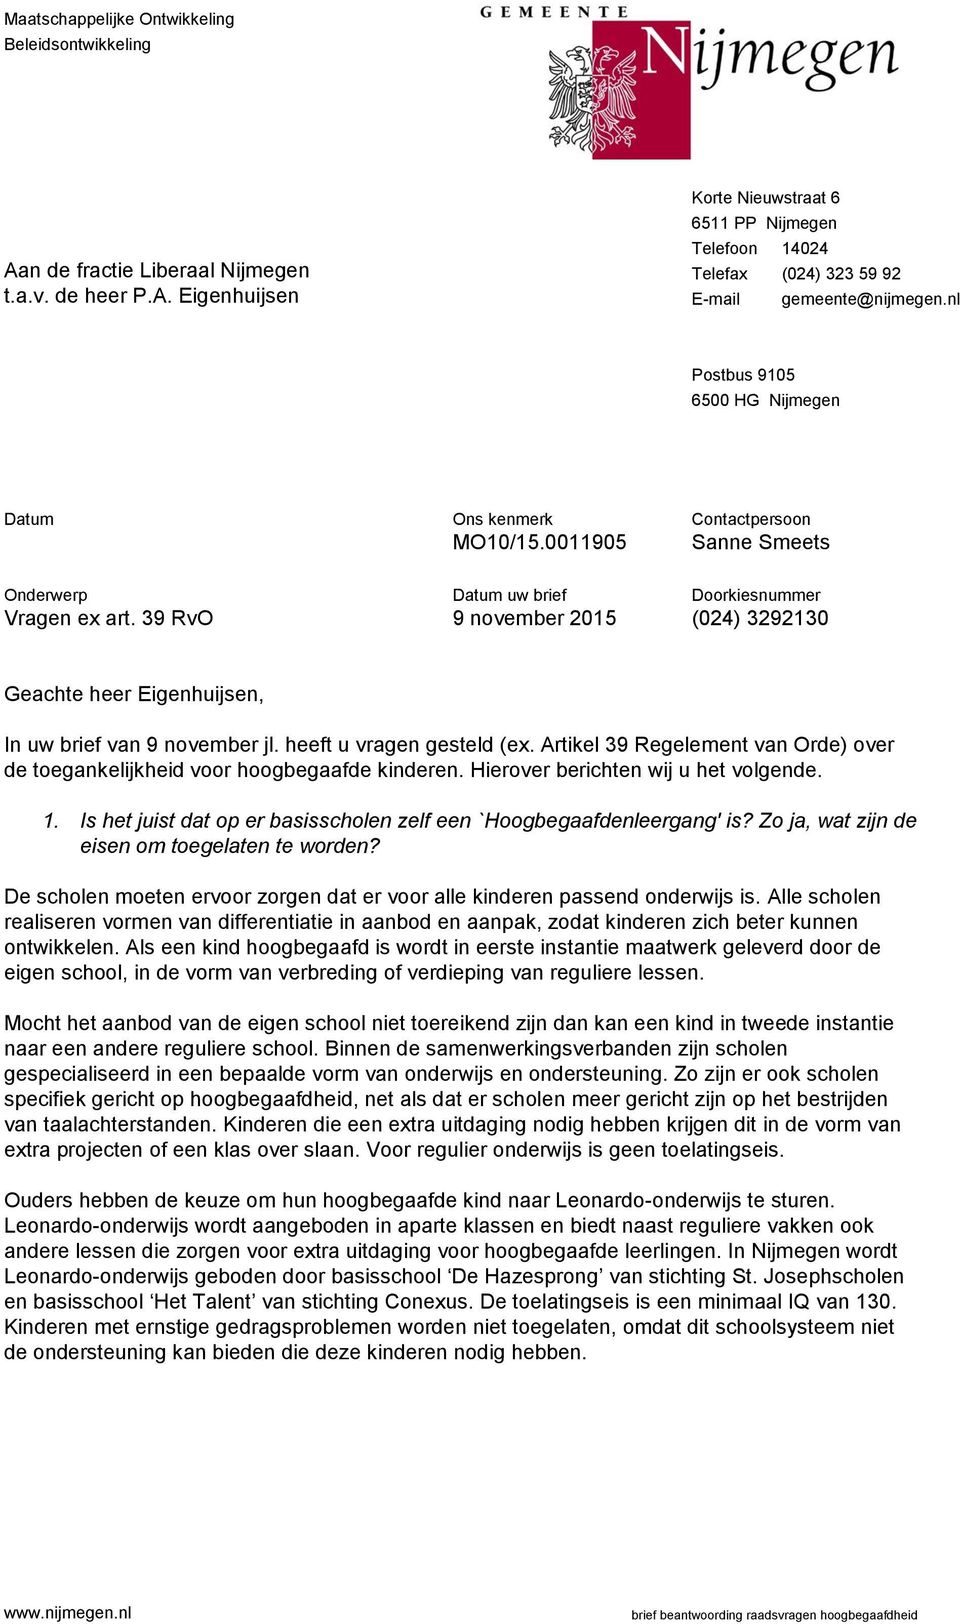 39 RvO uw brief 9 november 2015 Doorkiesnummer (024) 3292130 Geachte heer Eigenhuijsen, In uw brief van 9 november jl. heeft u vragen gesteld (ex.